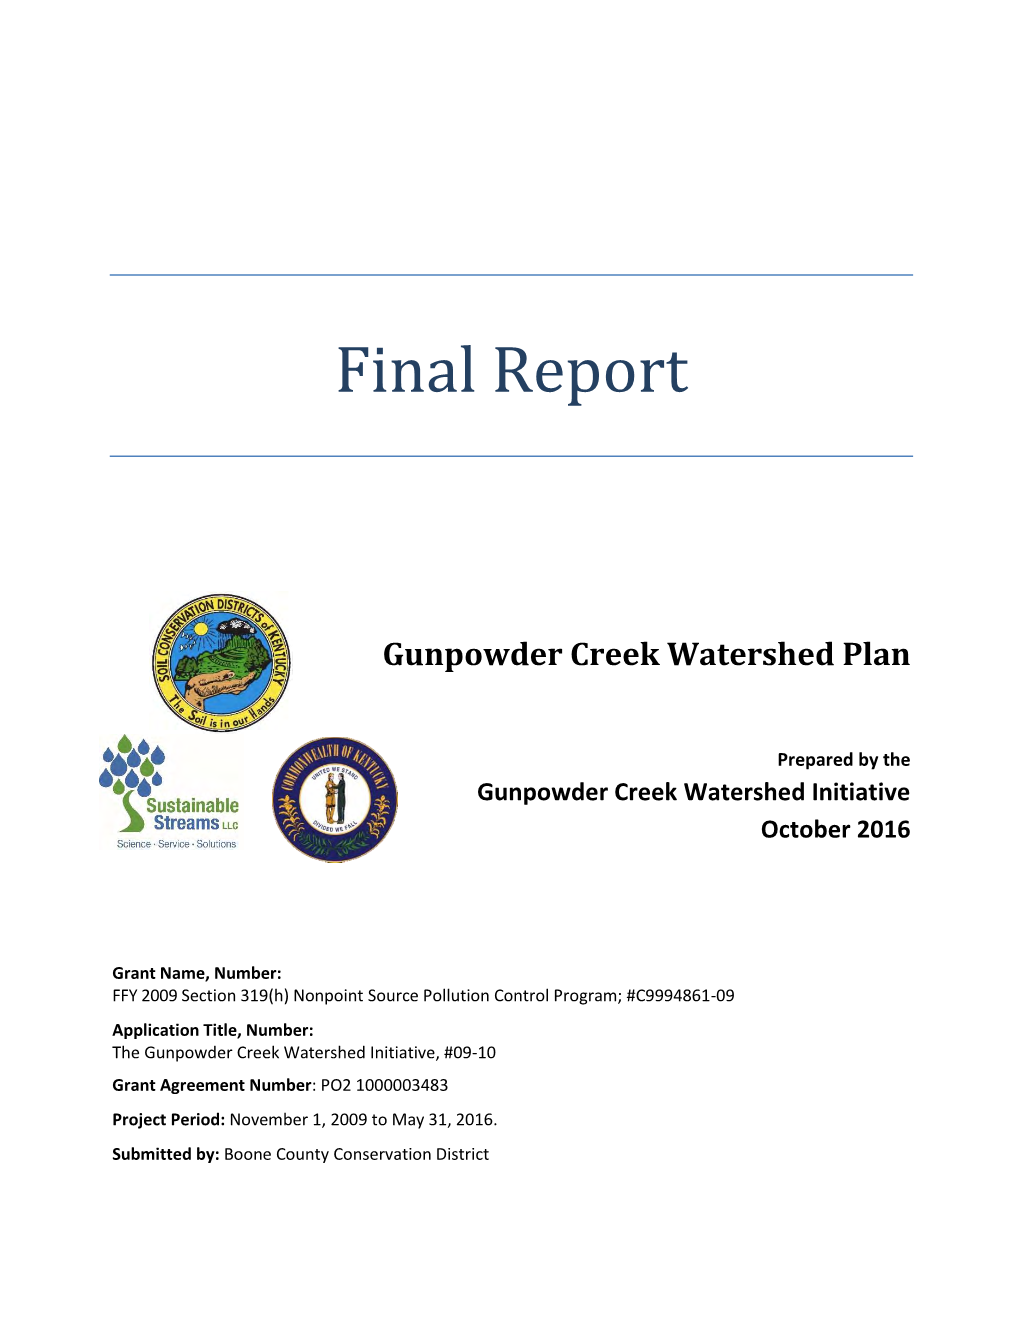 Gunpowder Creek Watershed Plan